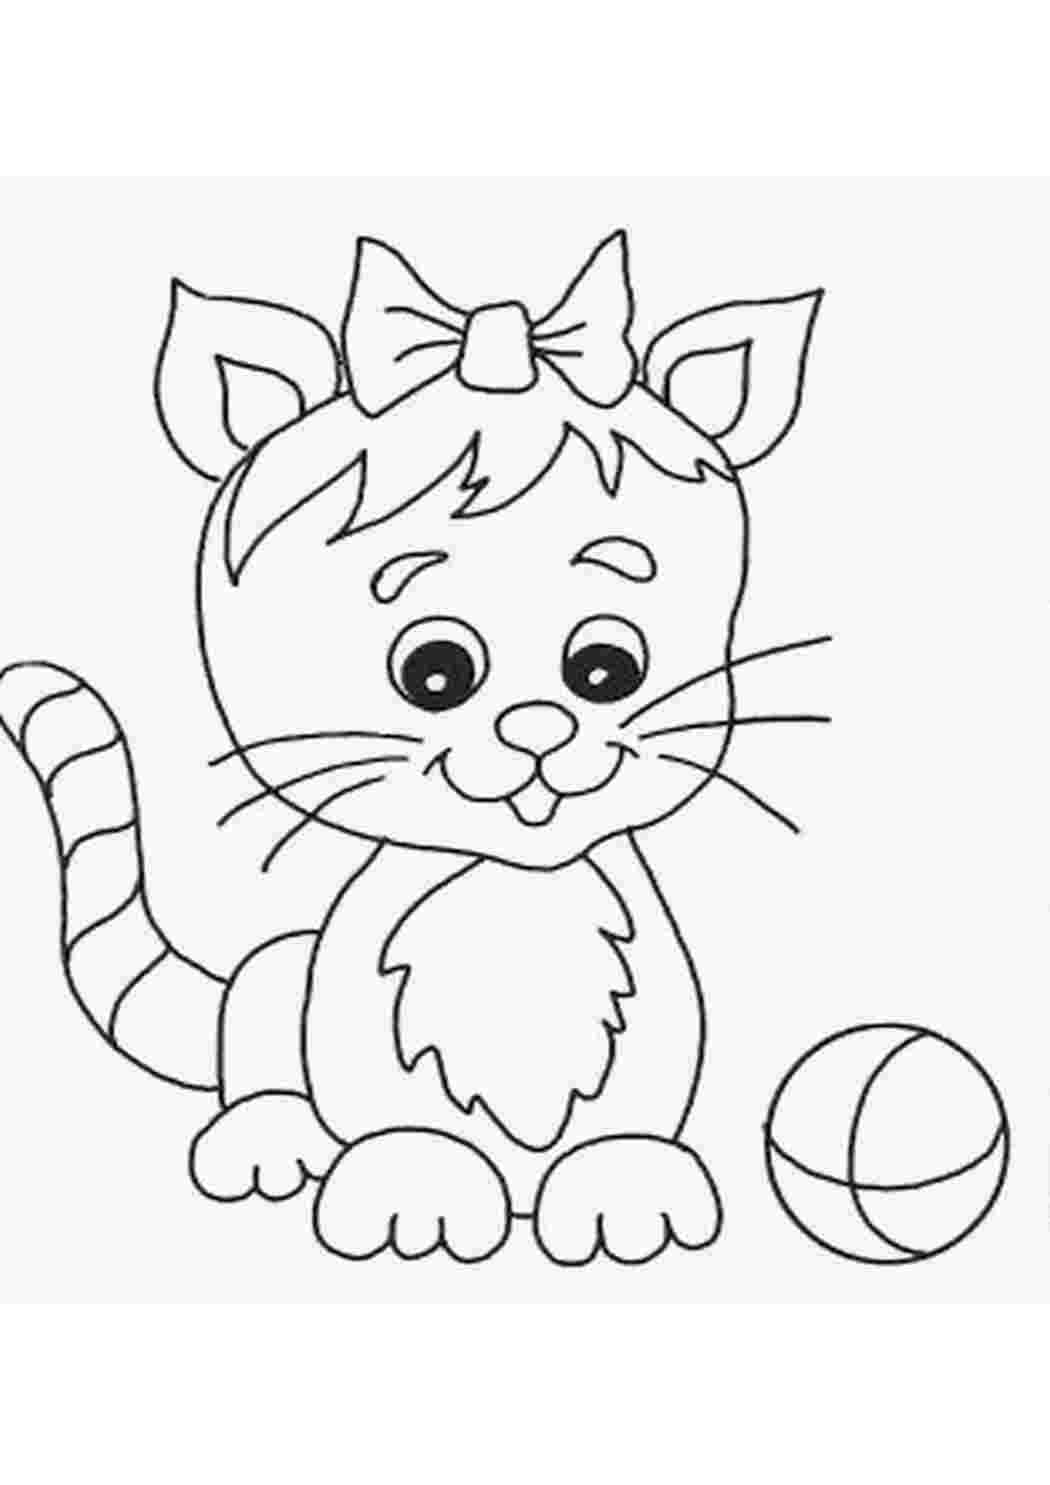 Раскраски с котами - картинка милого кота для раскрашивания